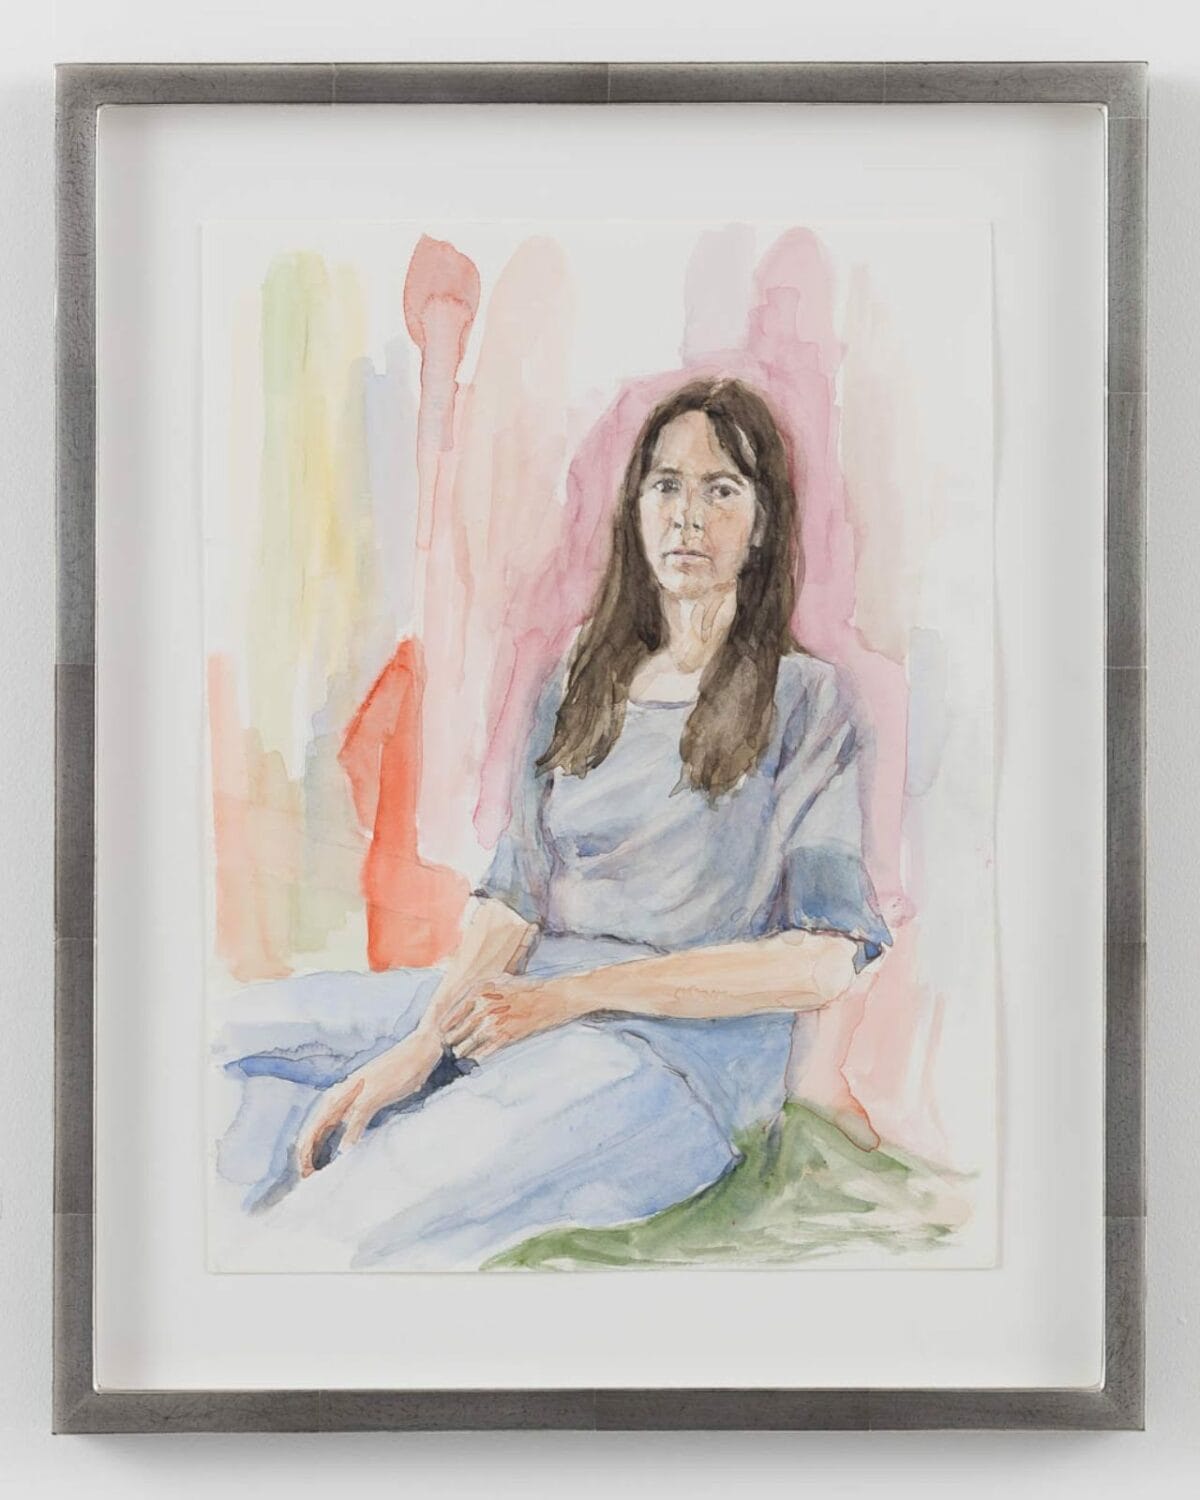 Gillian Wearing, Lockdown Portrait, 2020, watercolour on paper, 39.5 x 31.5 cm